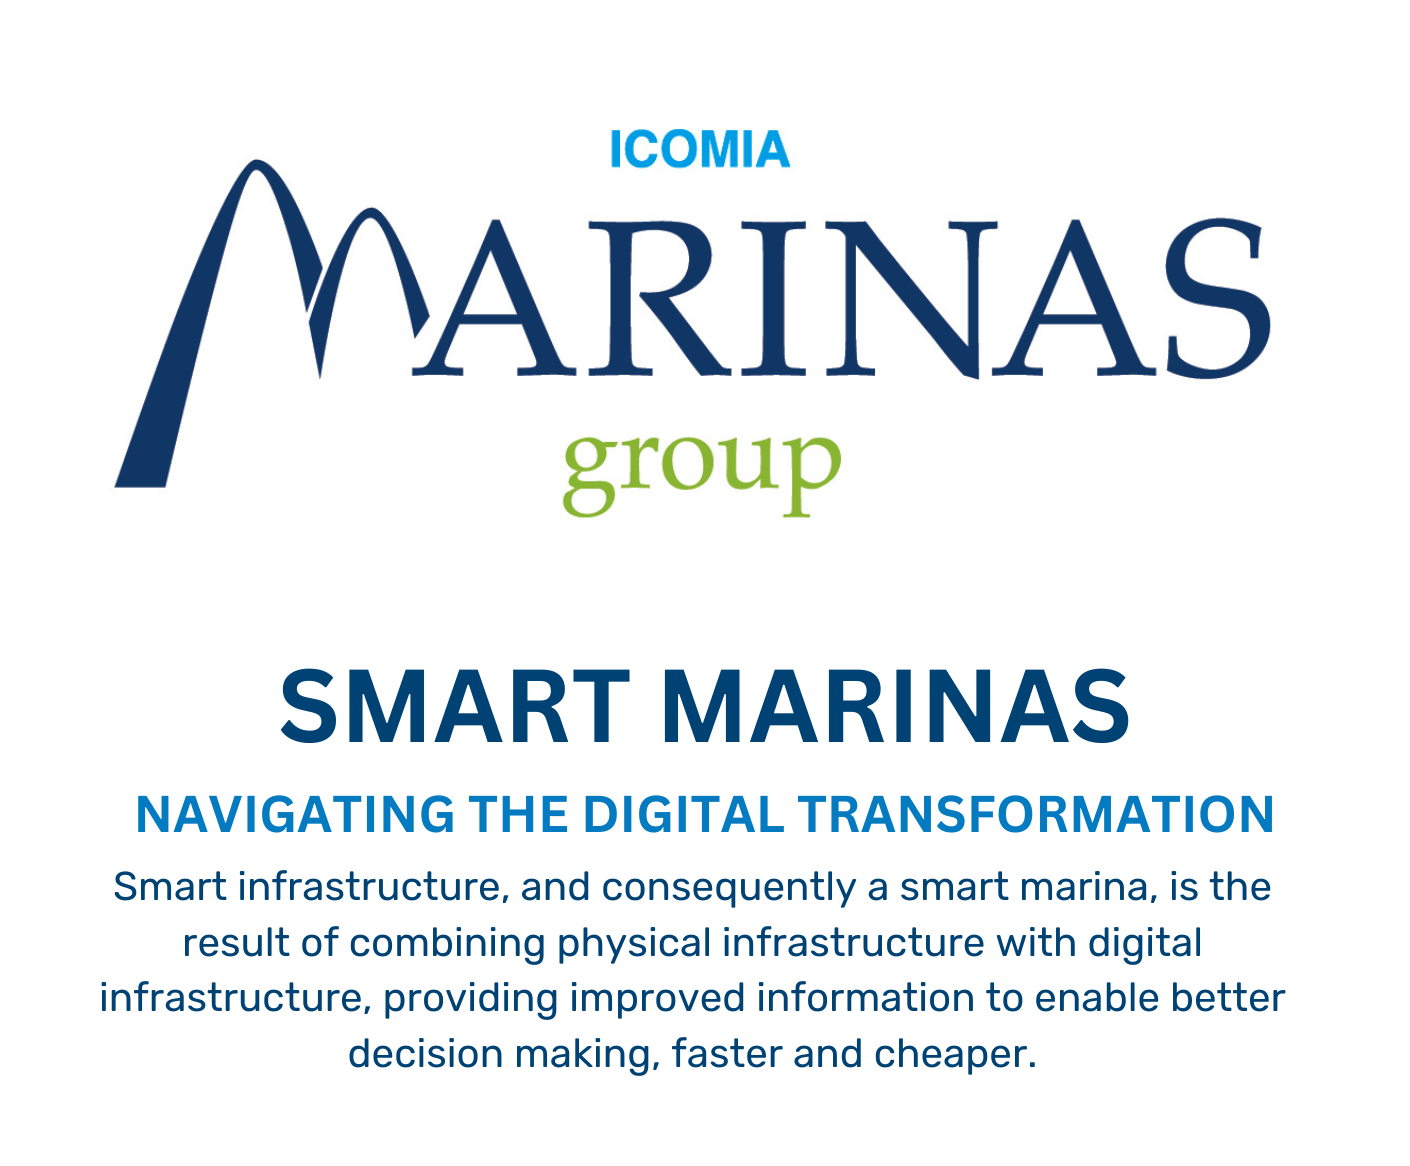 ICOMIA Marinas Group Create Smart Marinas Guide